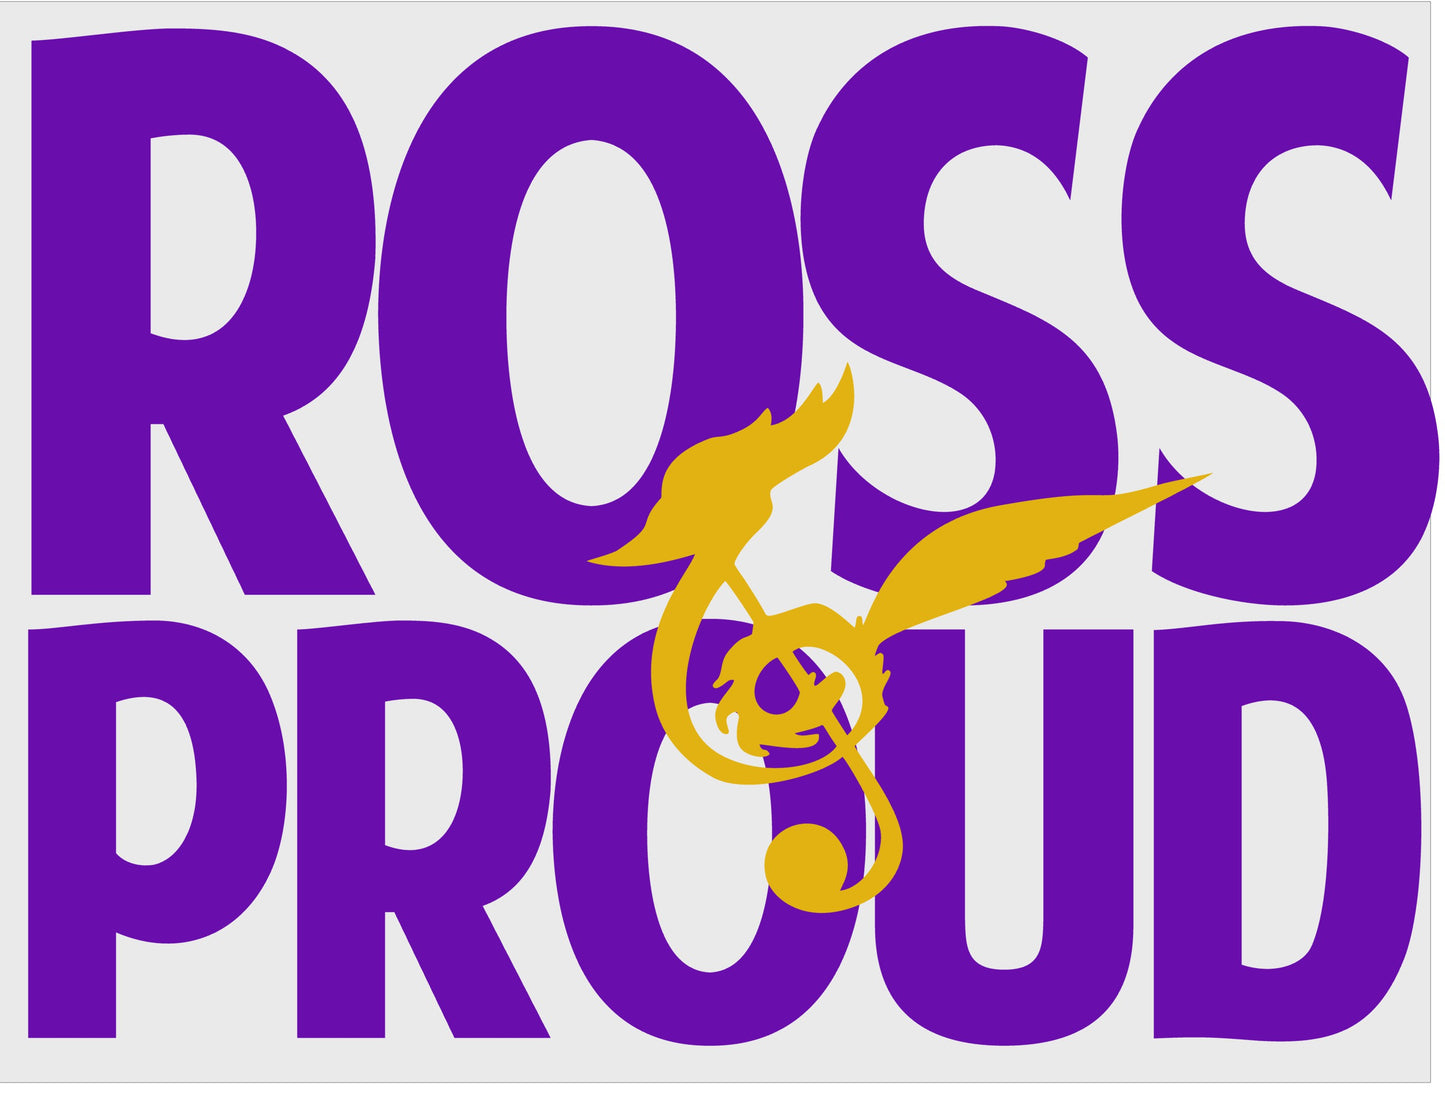 Ross Proud - Closes 1/22